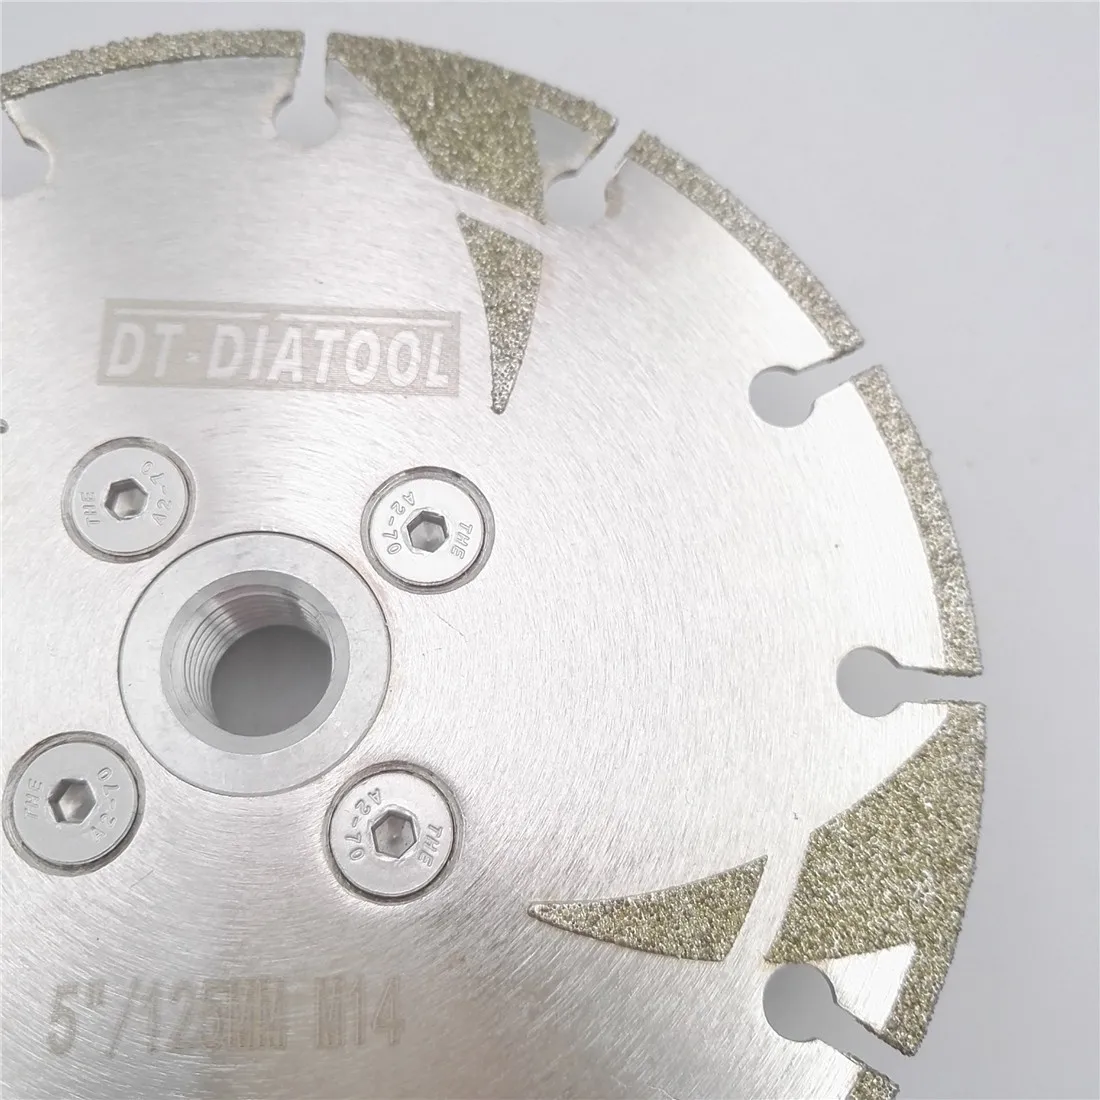 Алмазный диск для резки диаметром DT-DIATOOL мм, 2 шт. от AliExpress RU&CIS NEW